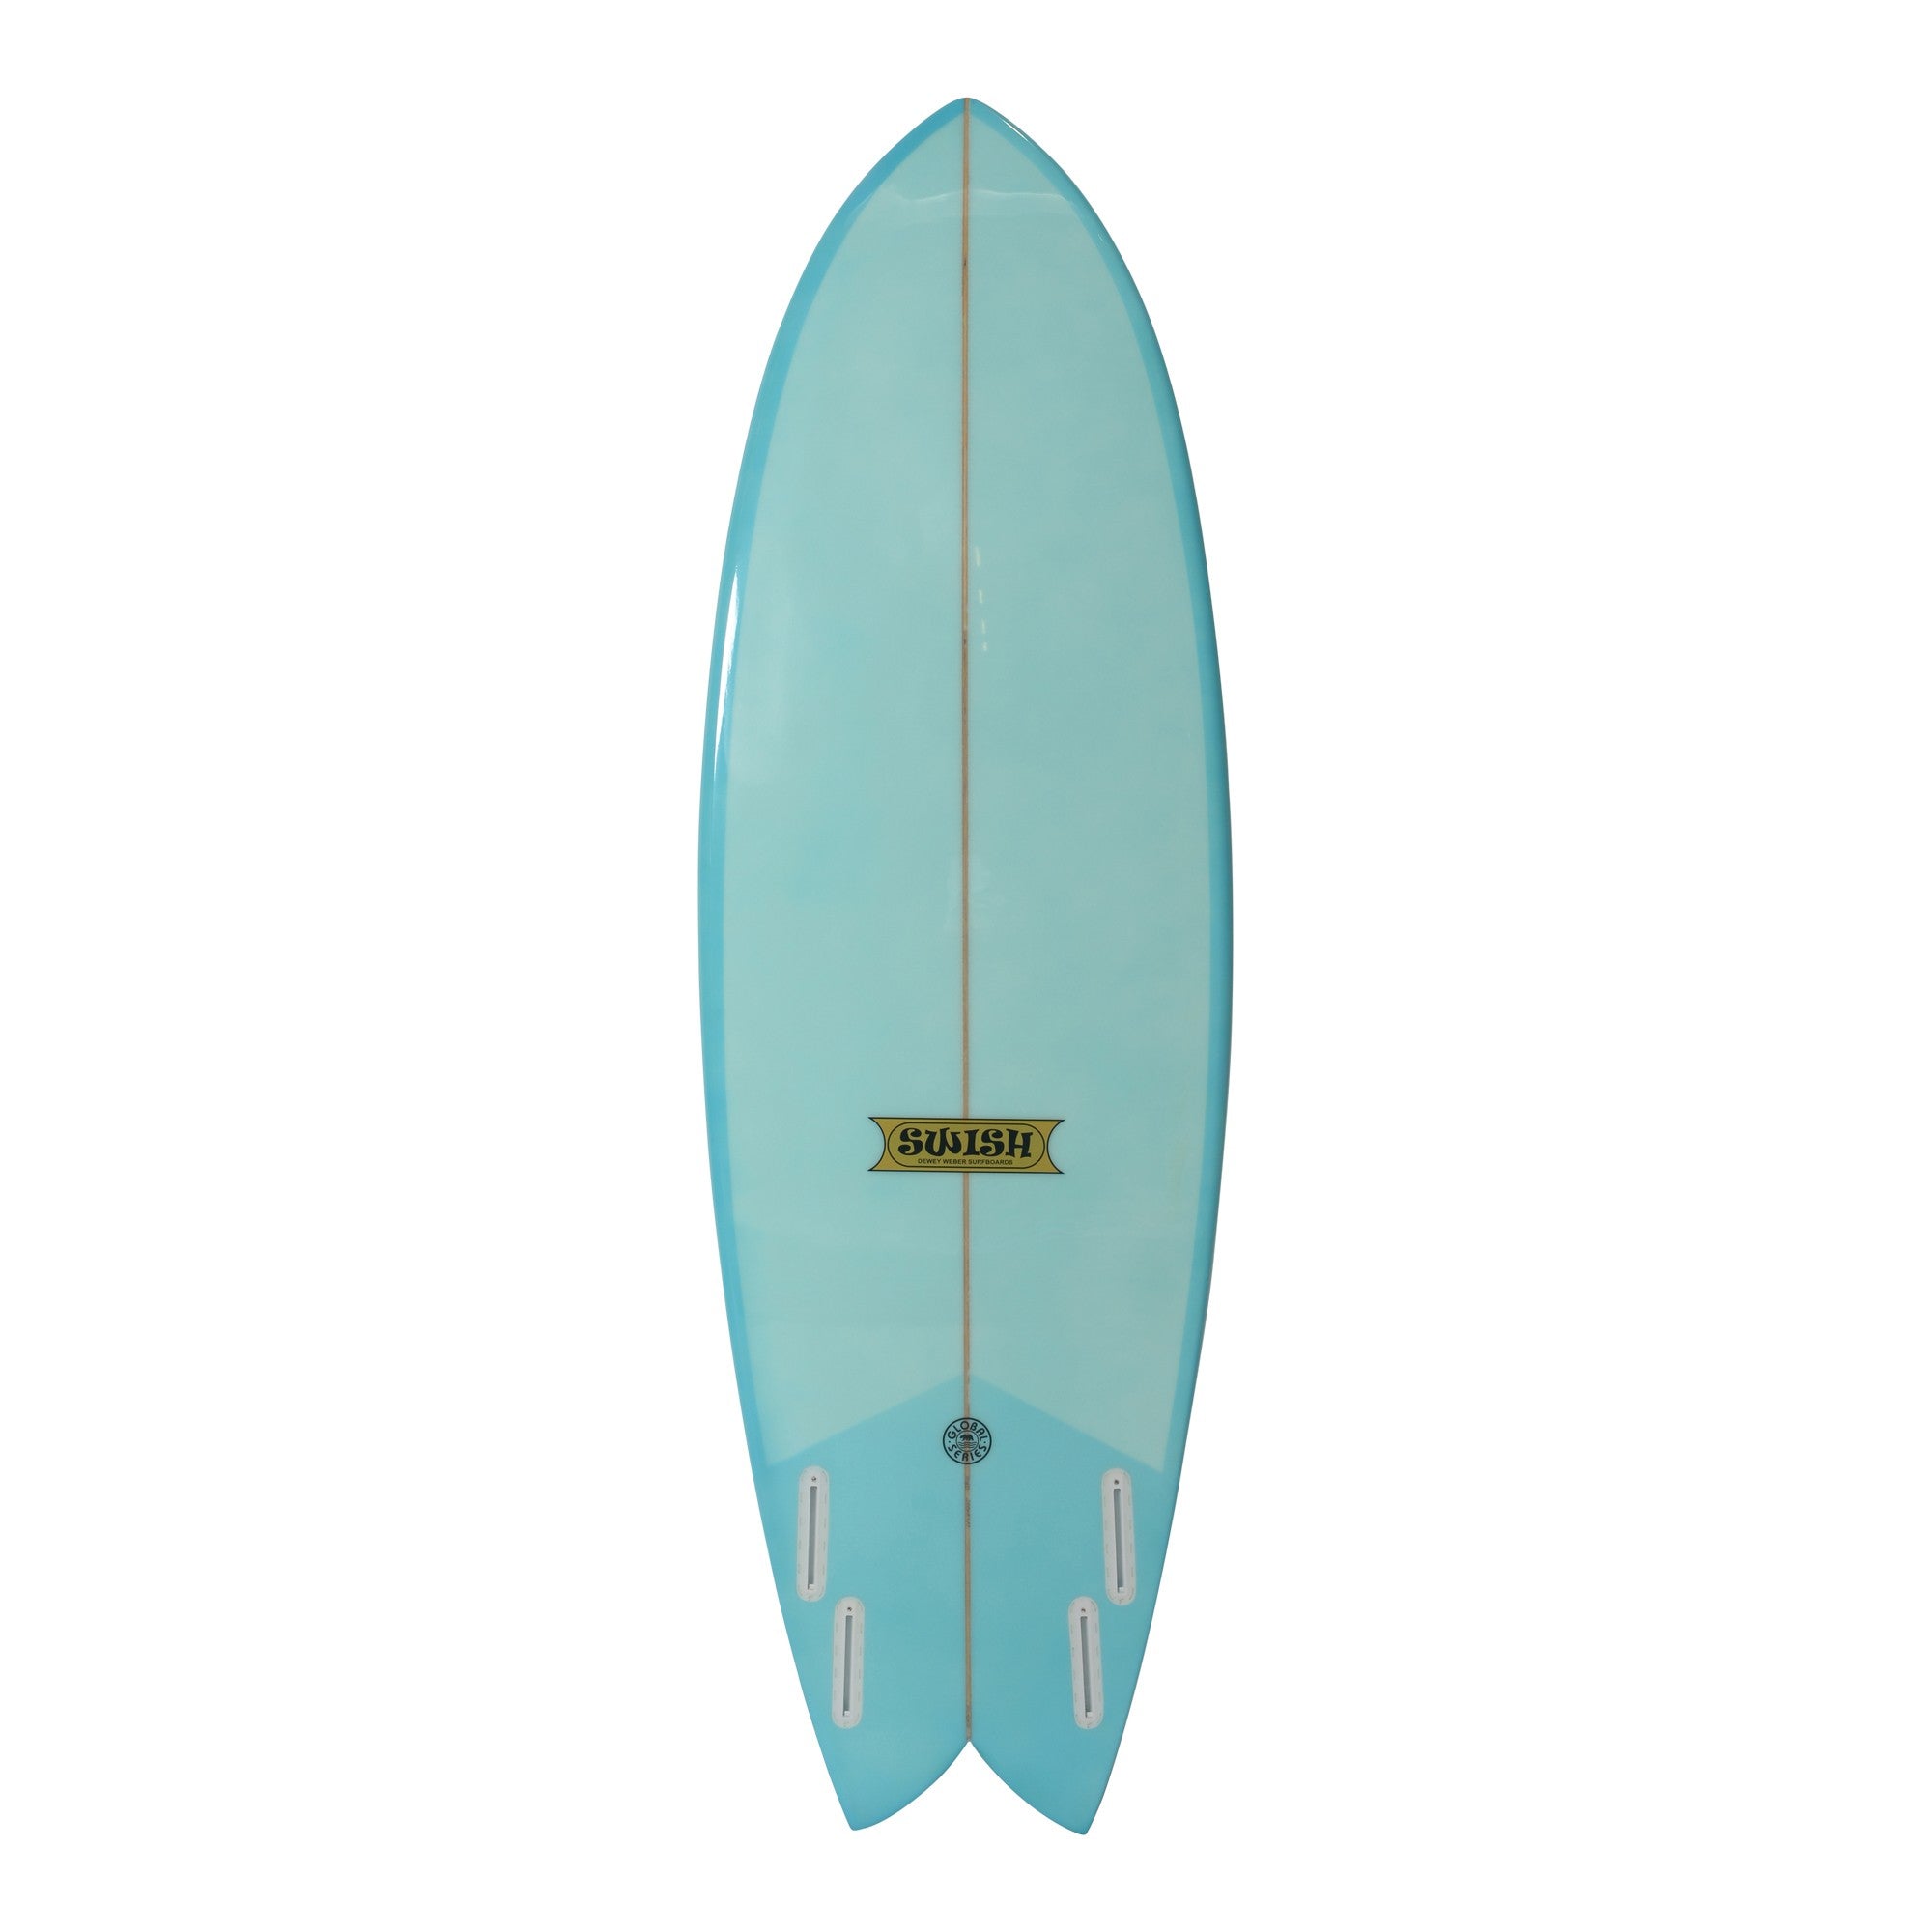 WEBER SURFBOARDS - Swish 5'6 - Blue